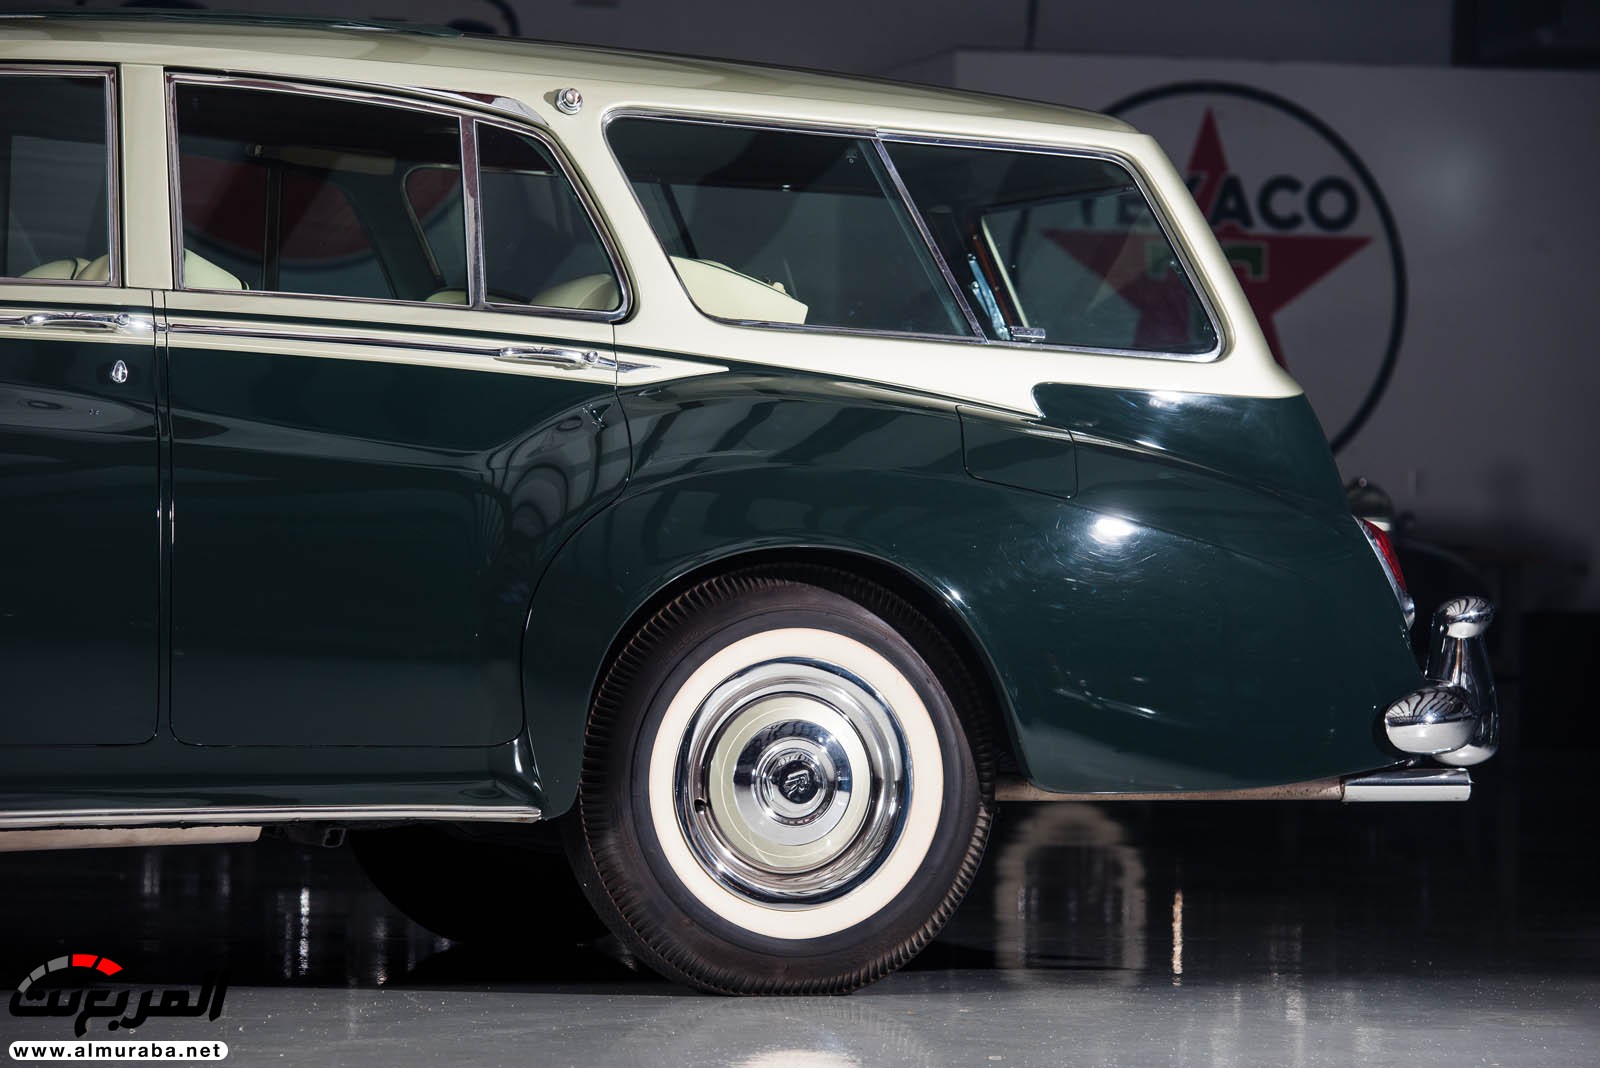 "رولز رويس" سيلفر كلاود 1959 ذات هيكلة الواجن تتوجه لتباع في مزاد عالمي Rolls-Royce Silver Cloud 72